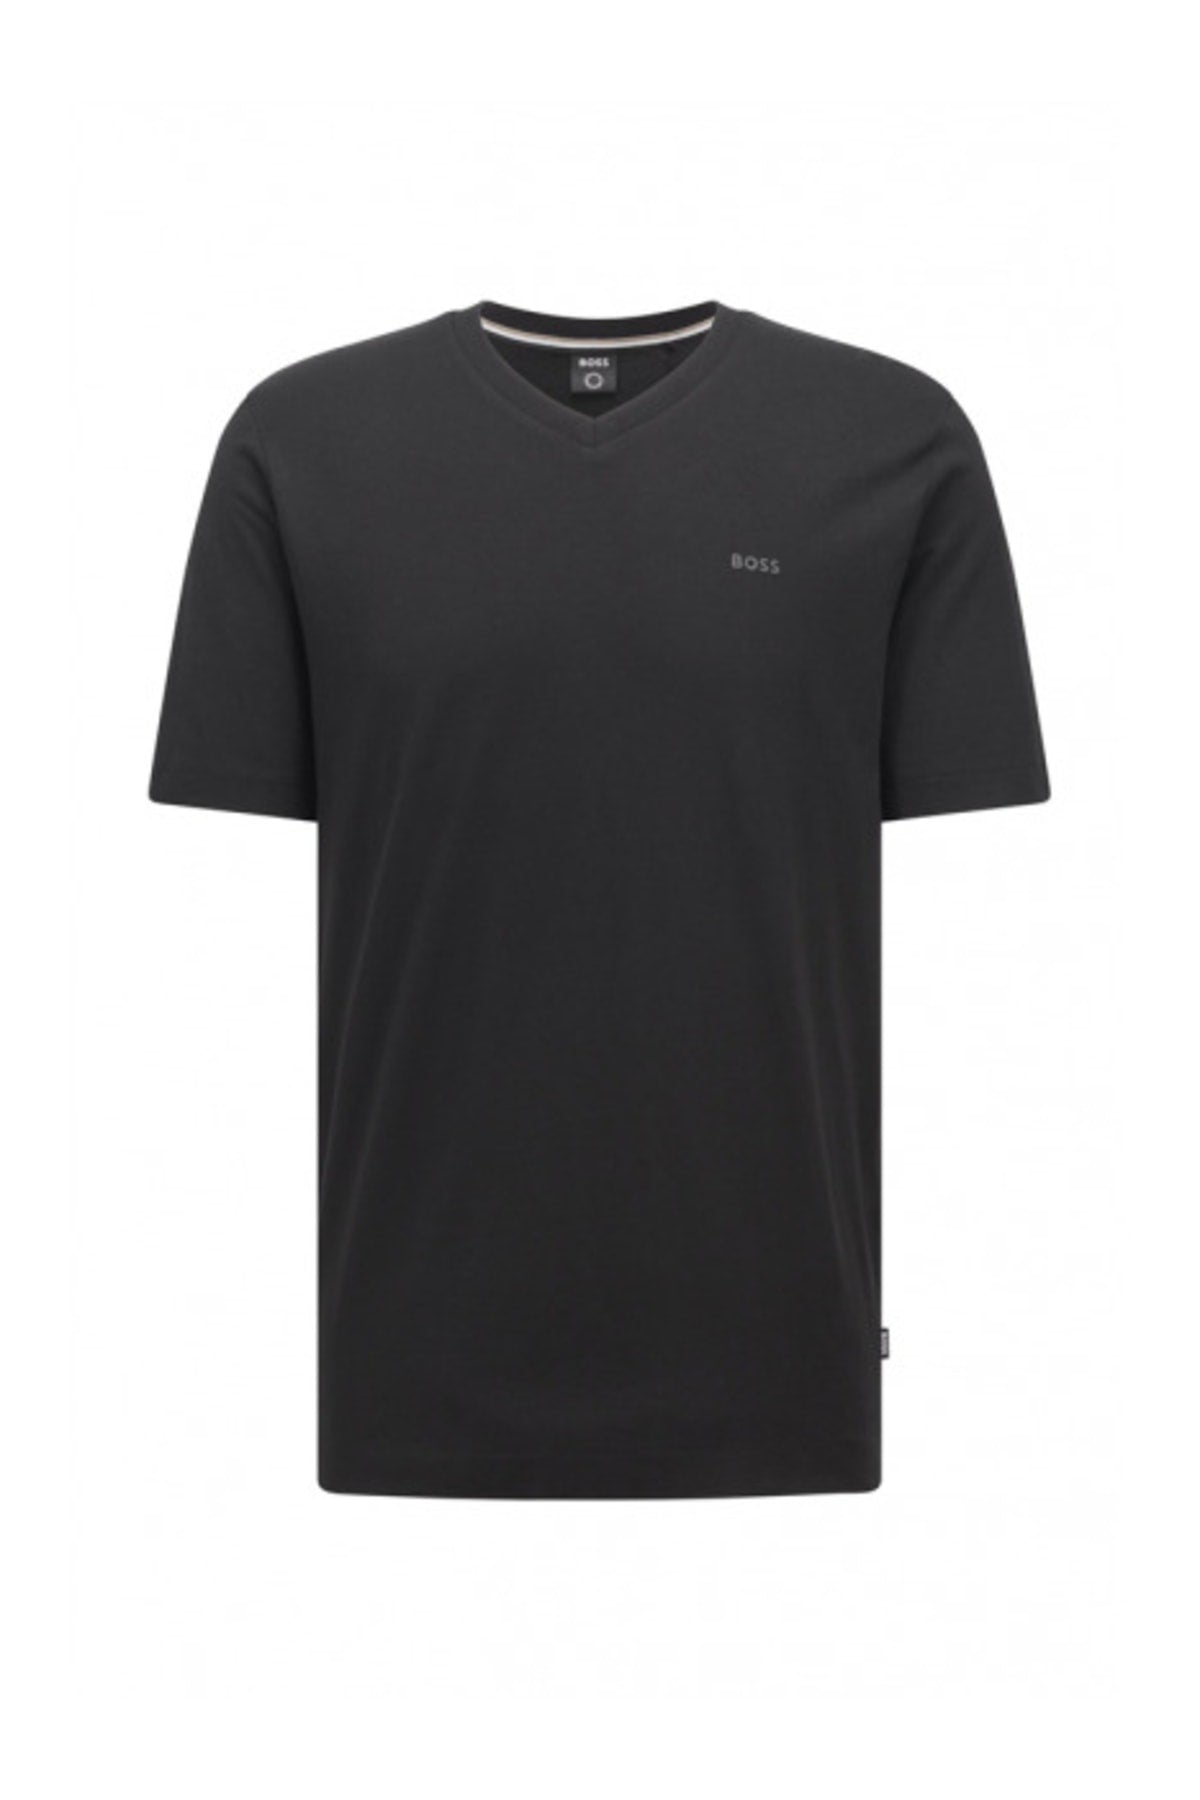 Men's Cotton V Neck Regular Fit Black T-shirt 50468348-001